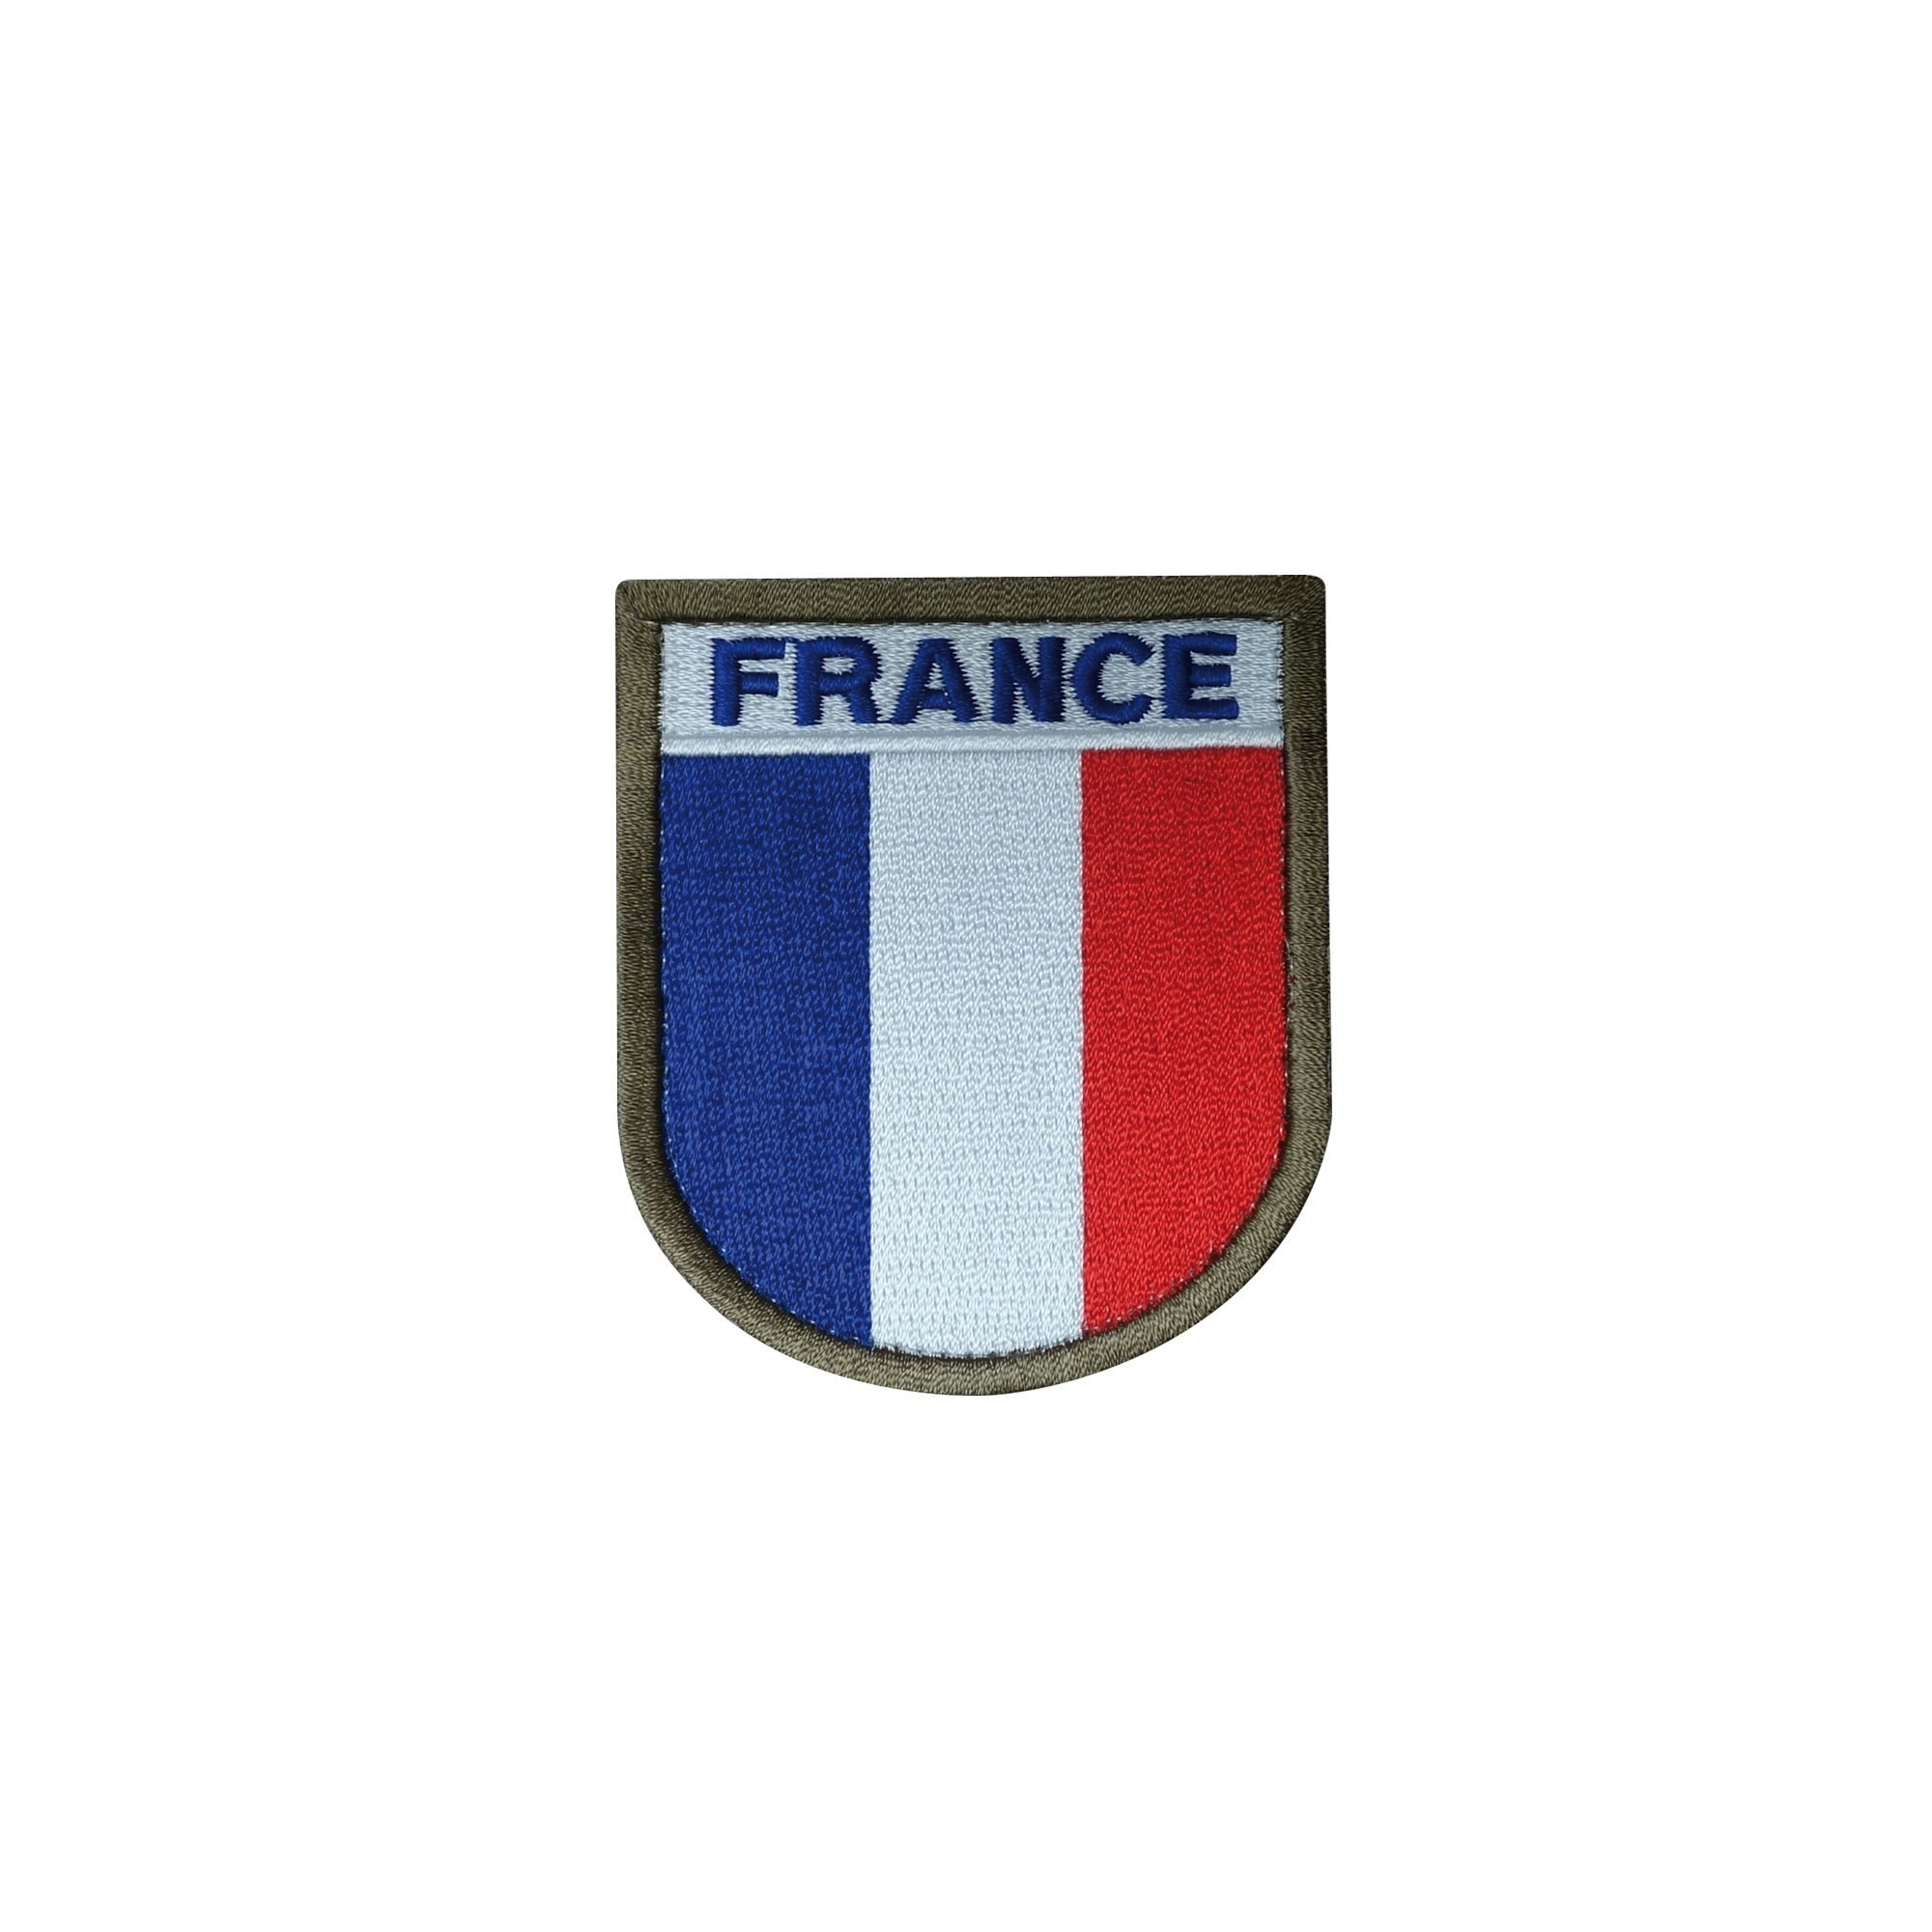 Ecusson brodé France réglementaire - Vêtements militaires